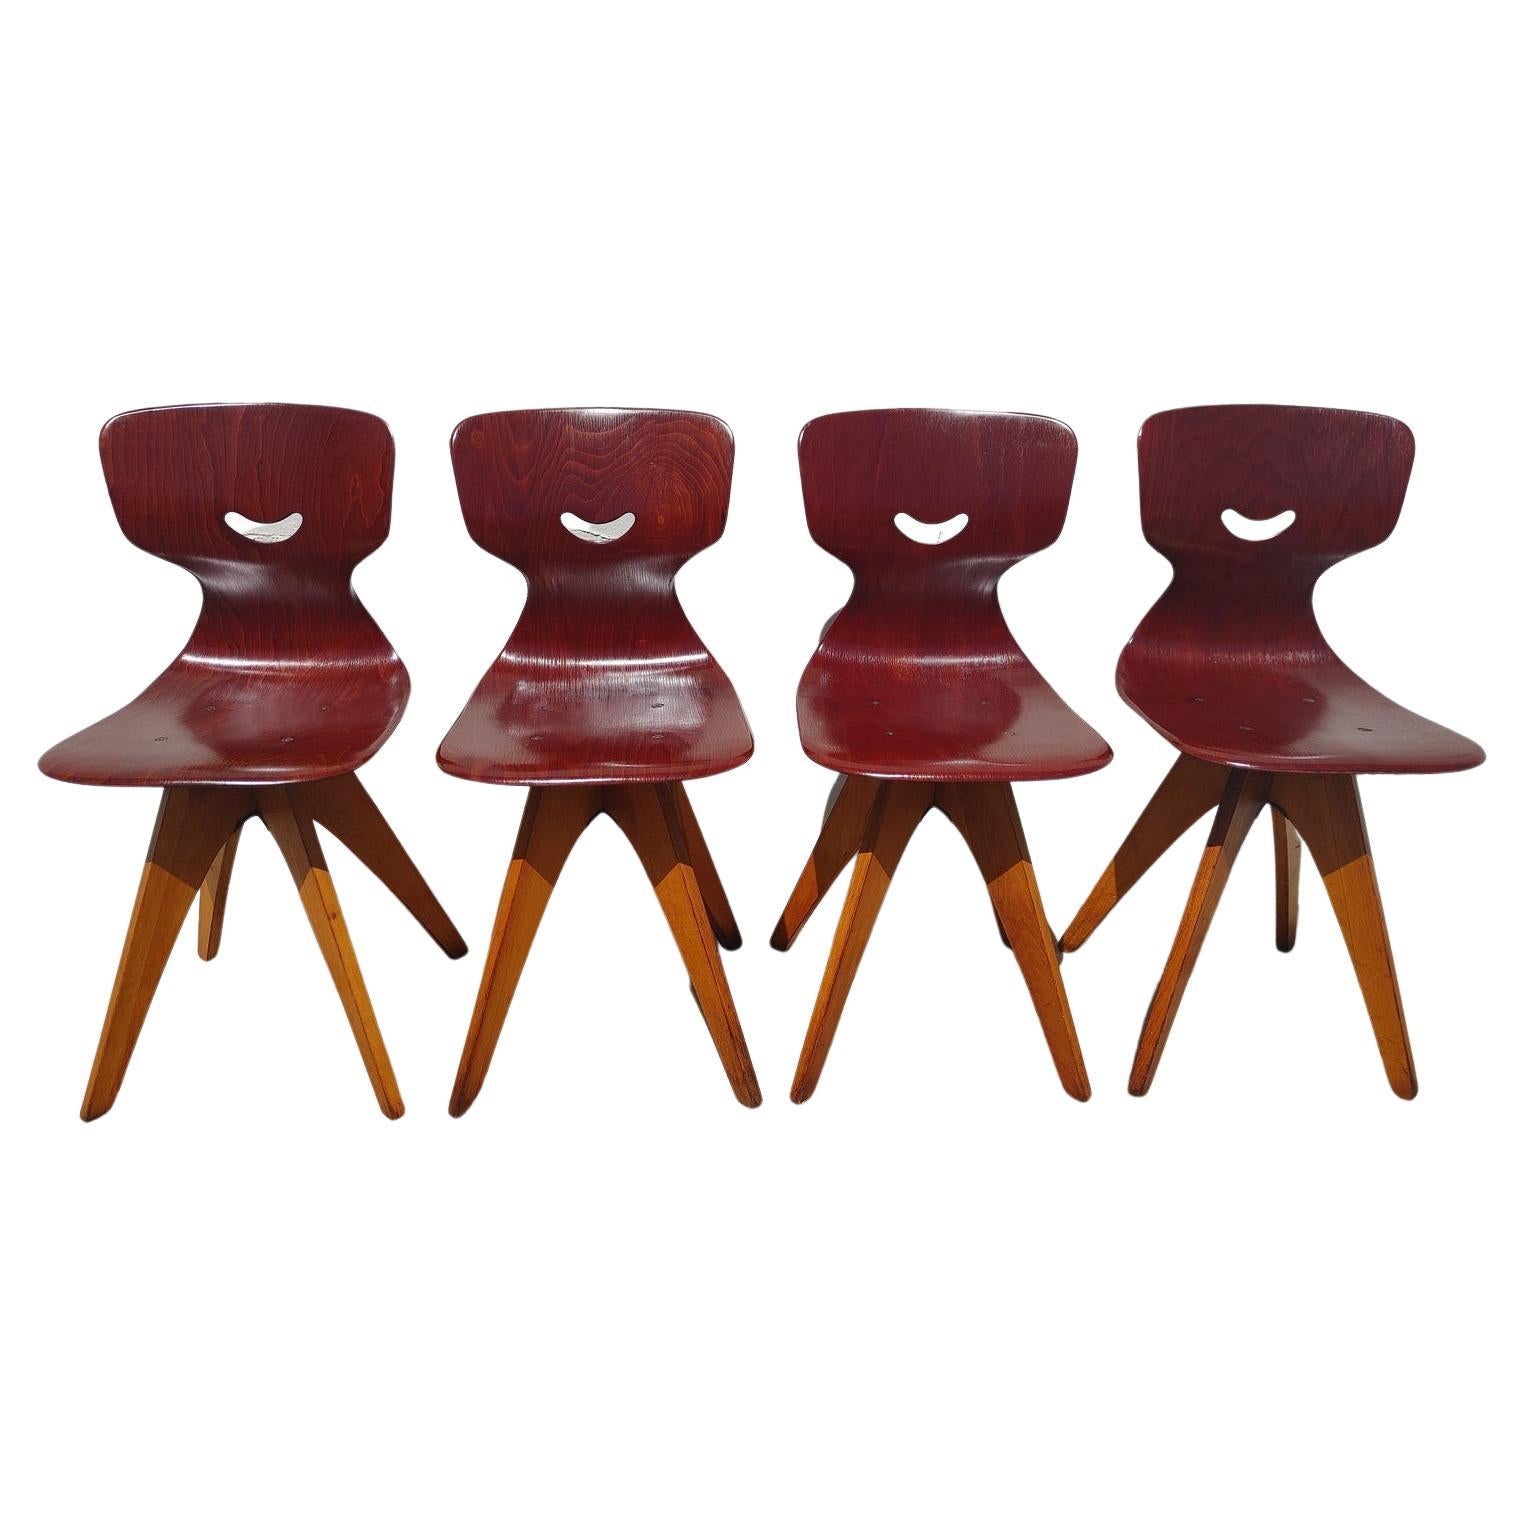 Satz von 4 modernen deutschen Bugholzstühlen aus der Mitte des Jahrhunderts

Überdurchschnittlicher Vintage-Zustand und strukturell gesund. Hat einige erwartete leichte Oberfläche Verschleiß und Kratzer. Sitze und Rückenlehnen sind in